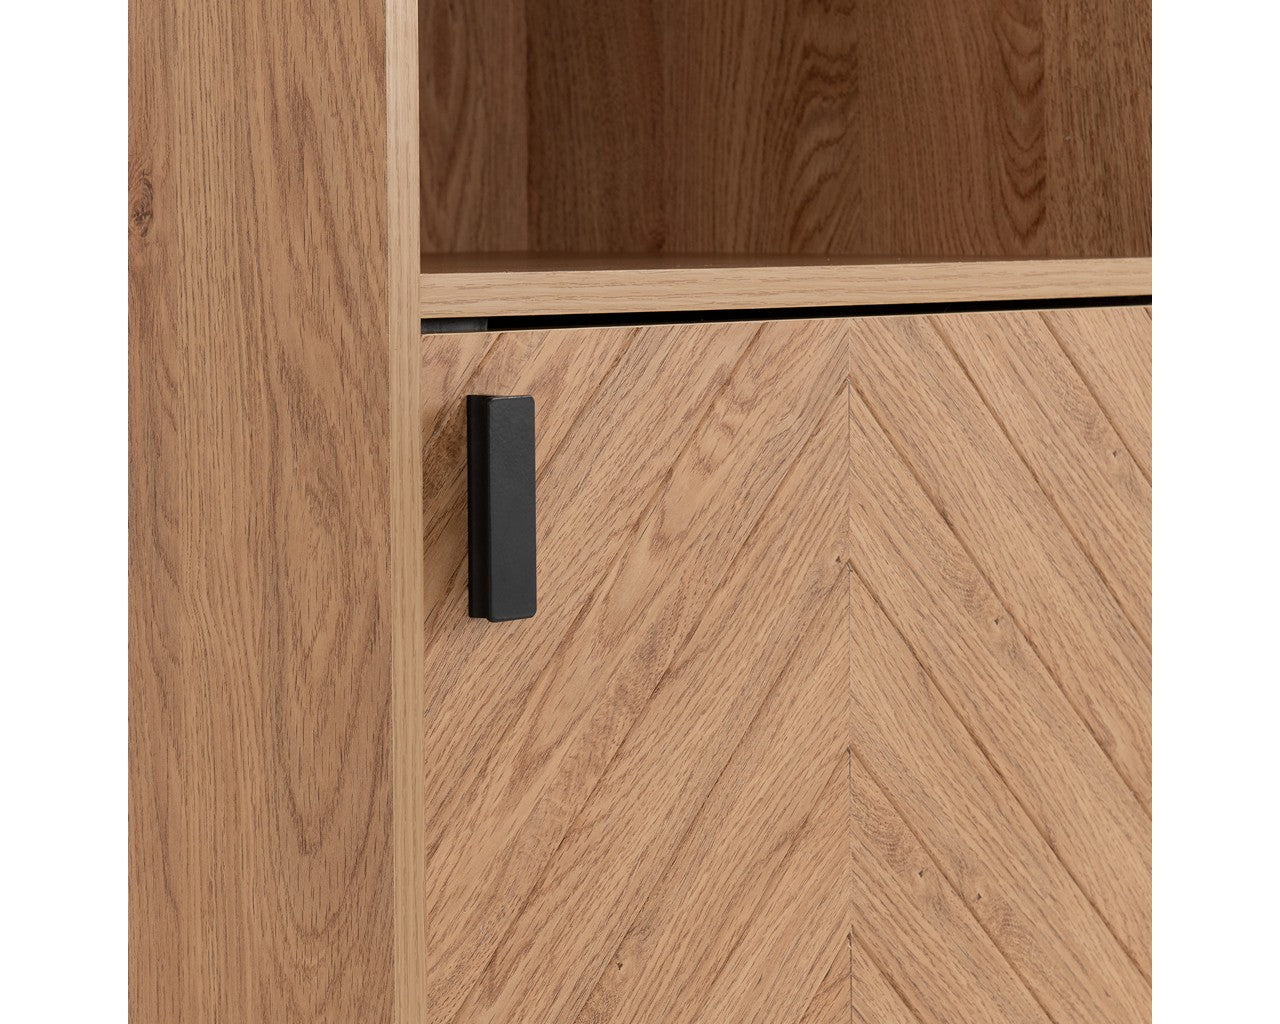 Leon Range - 1 Door 2 Shelf Cabinet